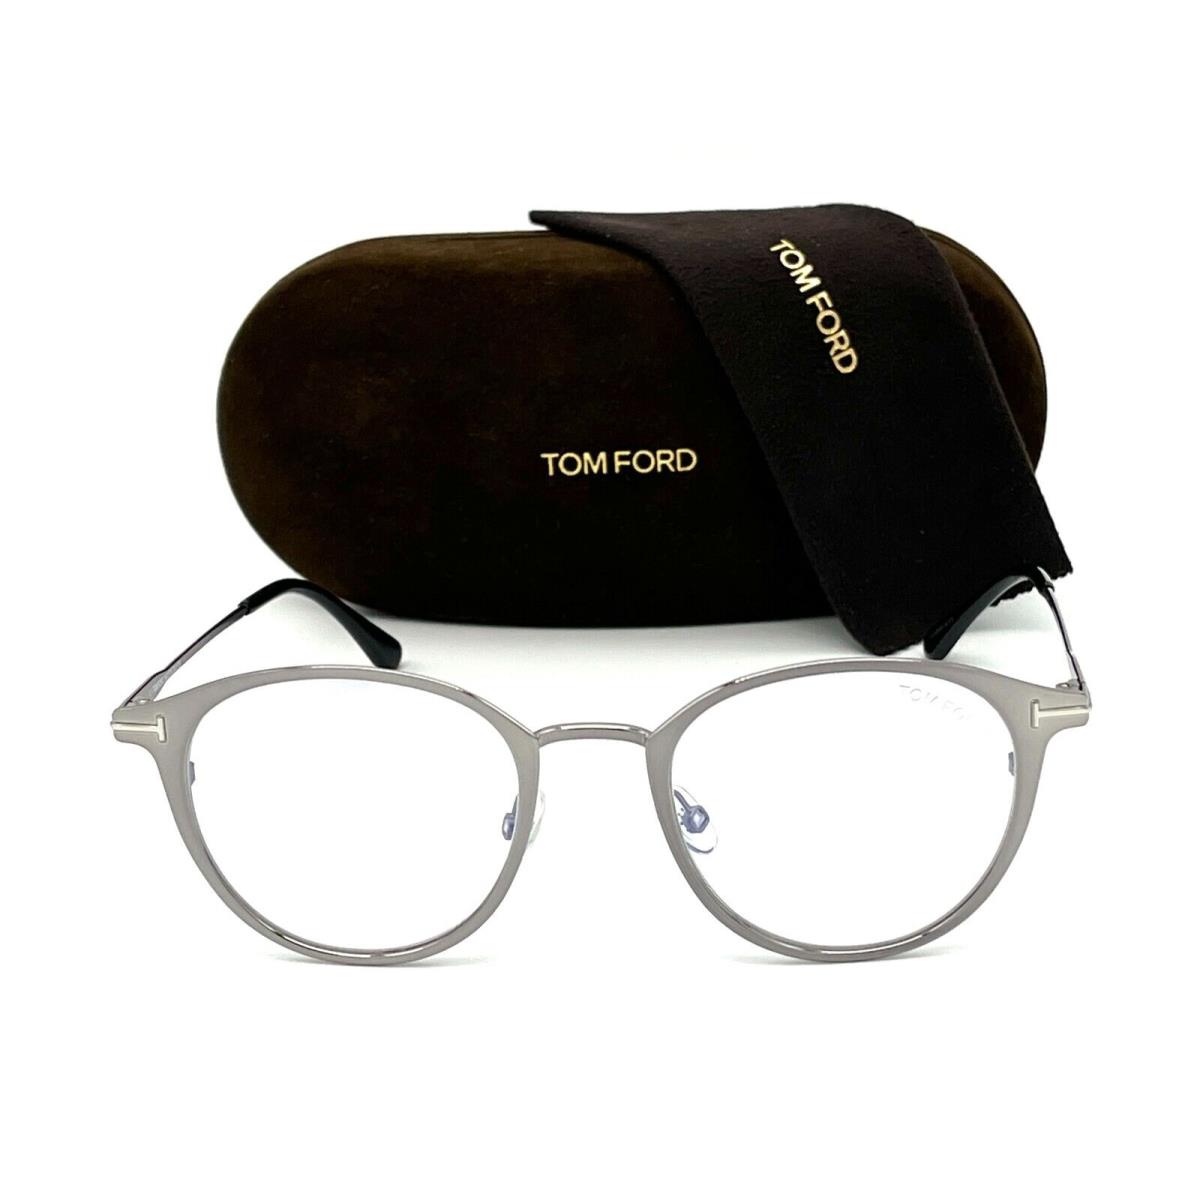 Tom Ford eyeglasses  - Shiny Gunmetal Frame 0